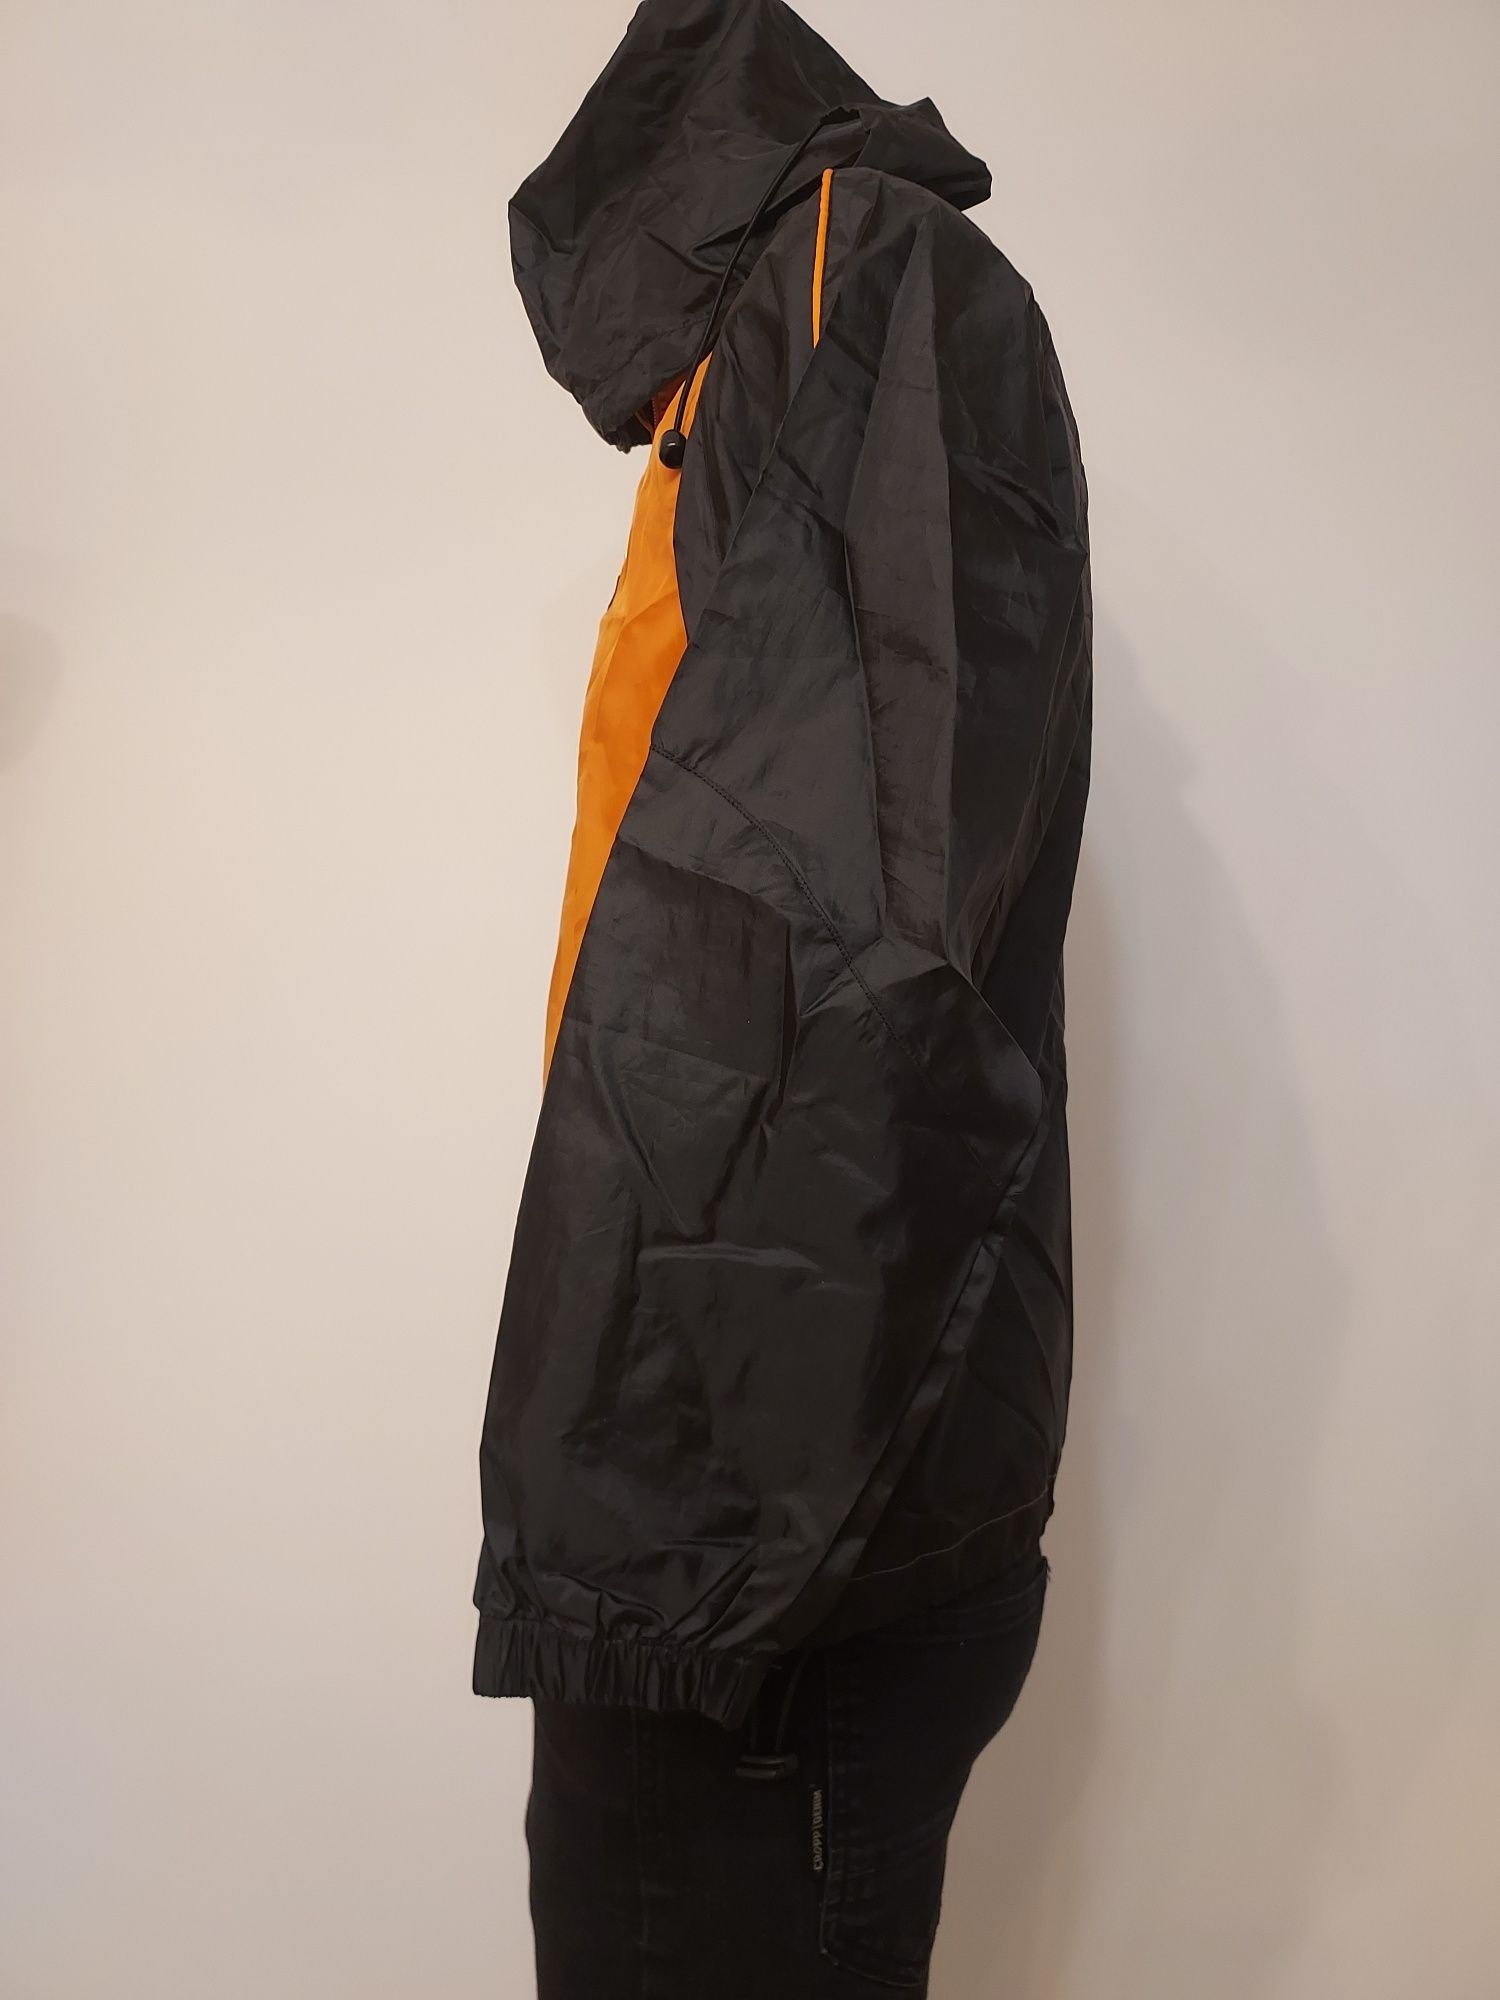 Patrick kurtka przeciwdeszczowa wiatrówka XS